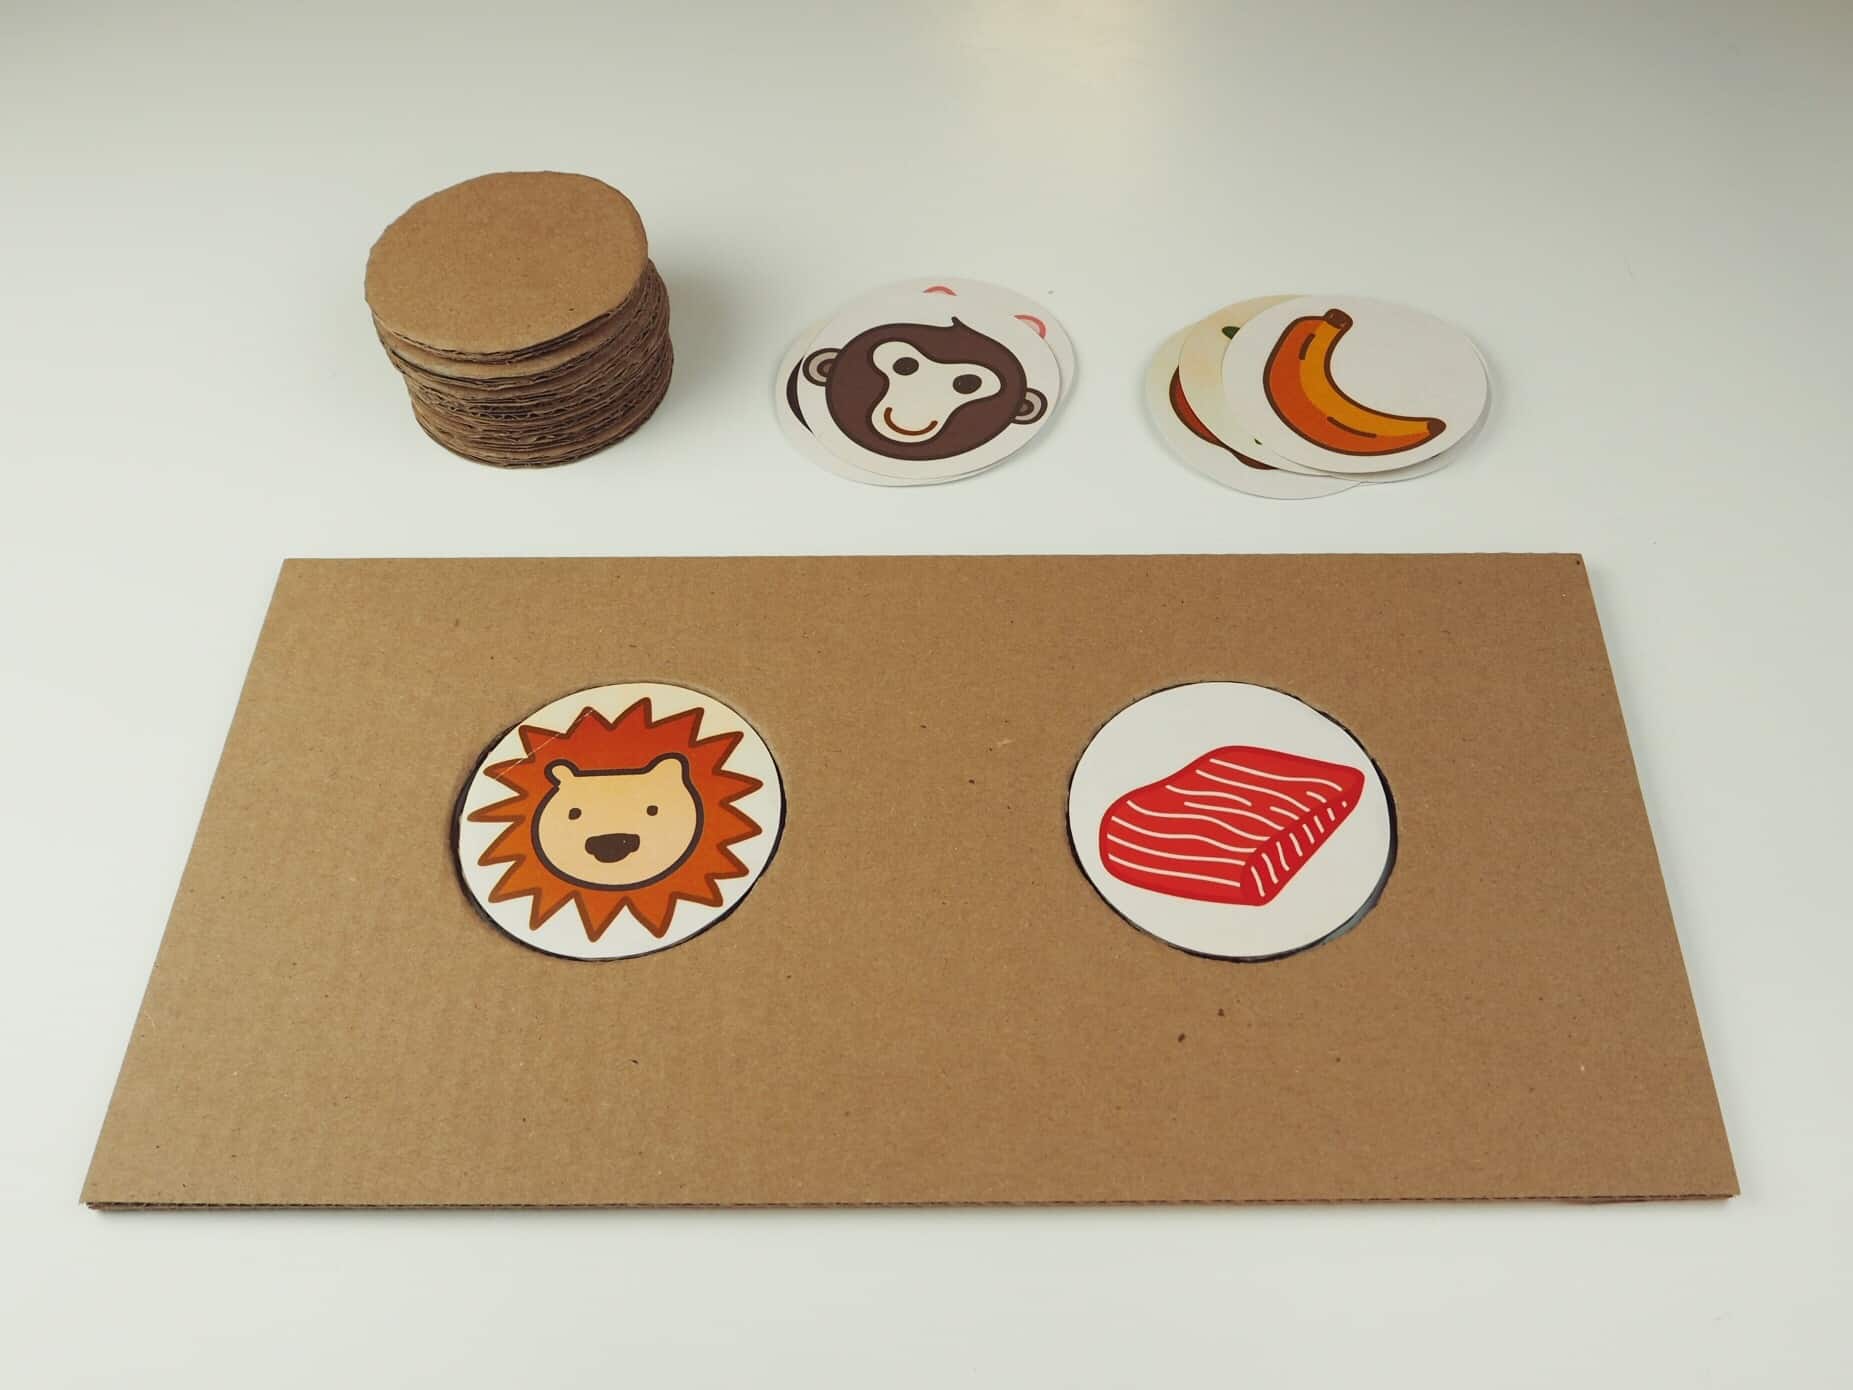 DIY自製紙箱玩具 紙箱圖卡配對遊戲 DIY Cardboard Matching Game